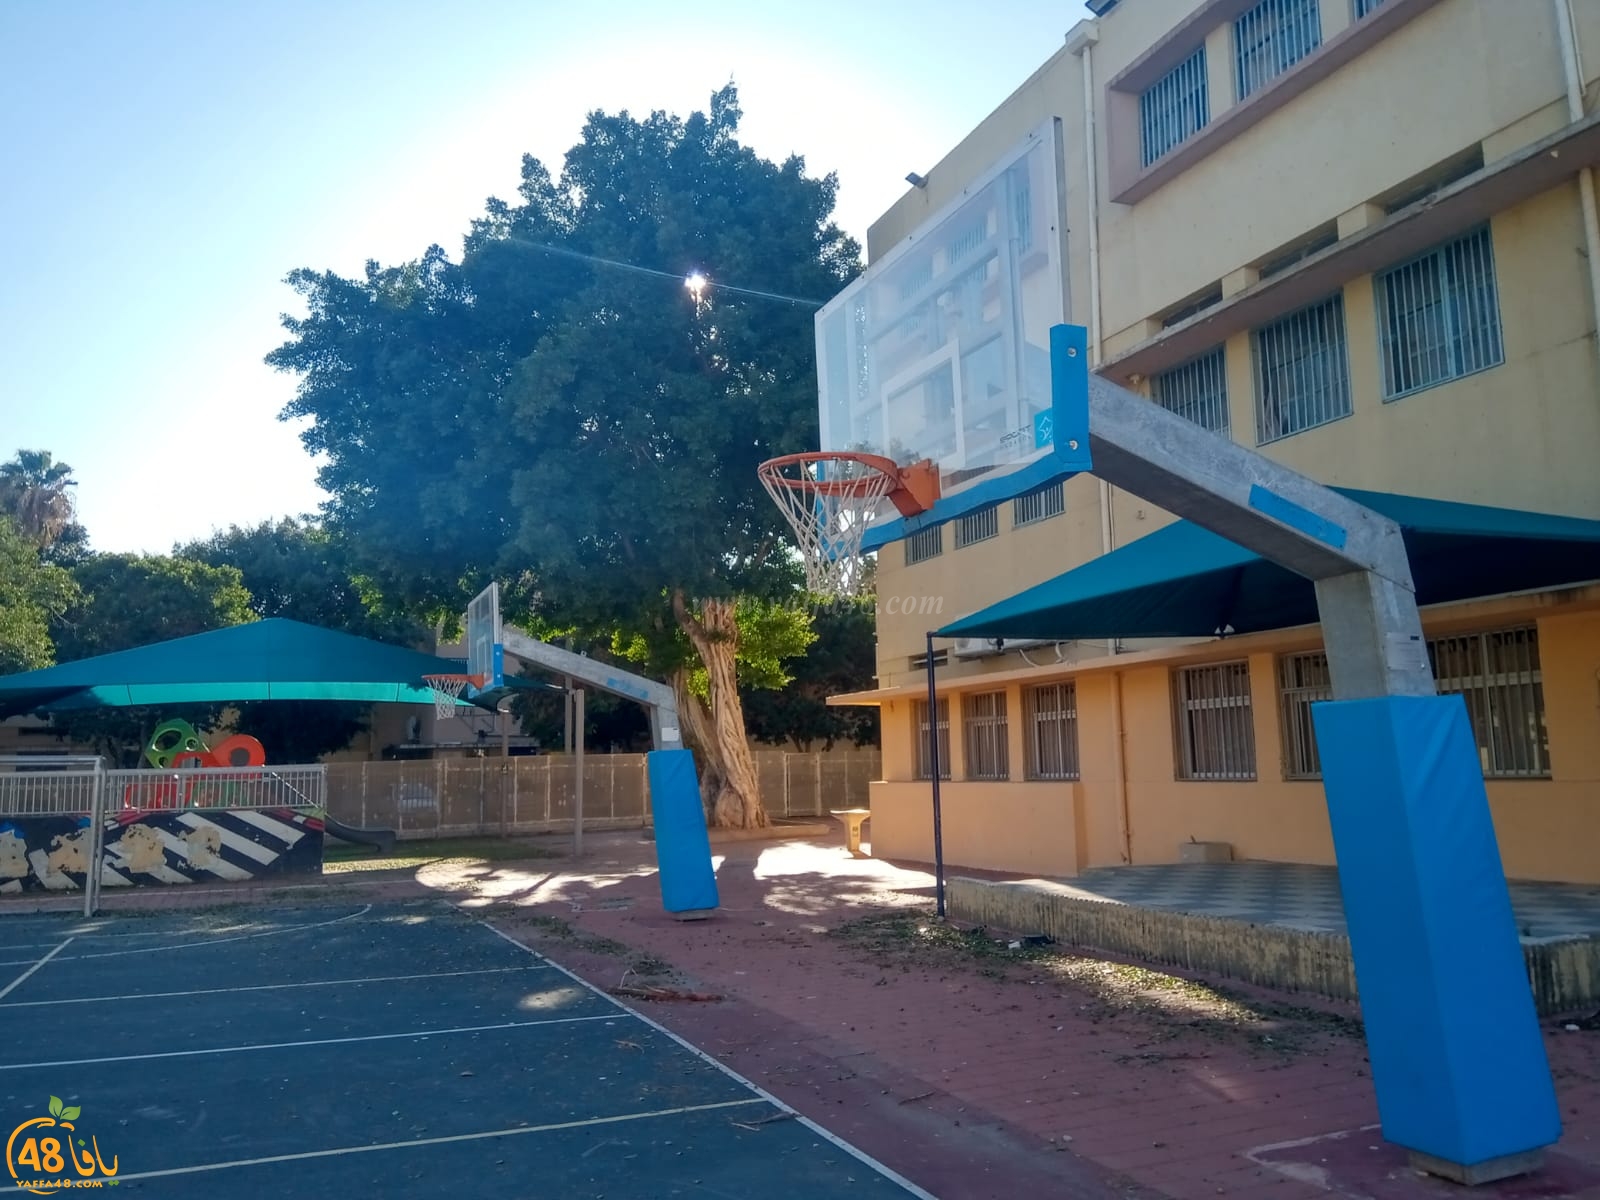  فيديو: كيف يُعقل أن تُغلق مدرسة الزهراء الابتدائية بيافا